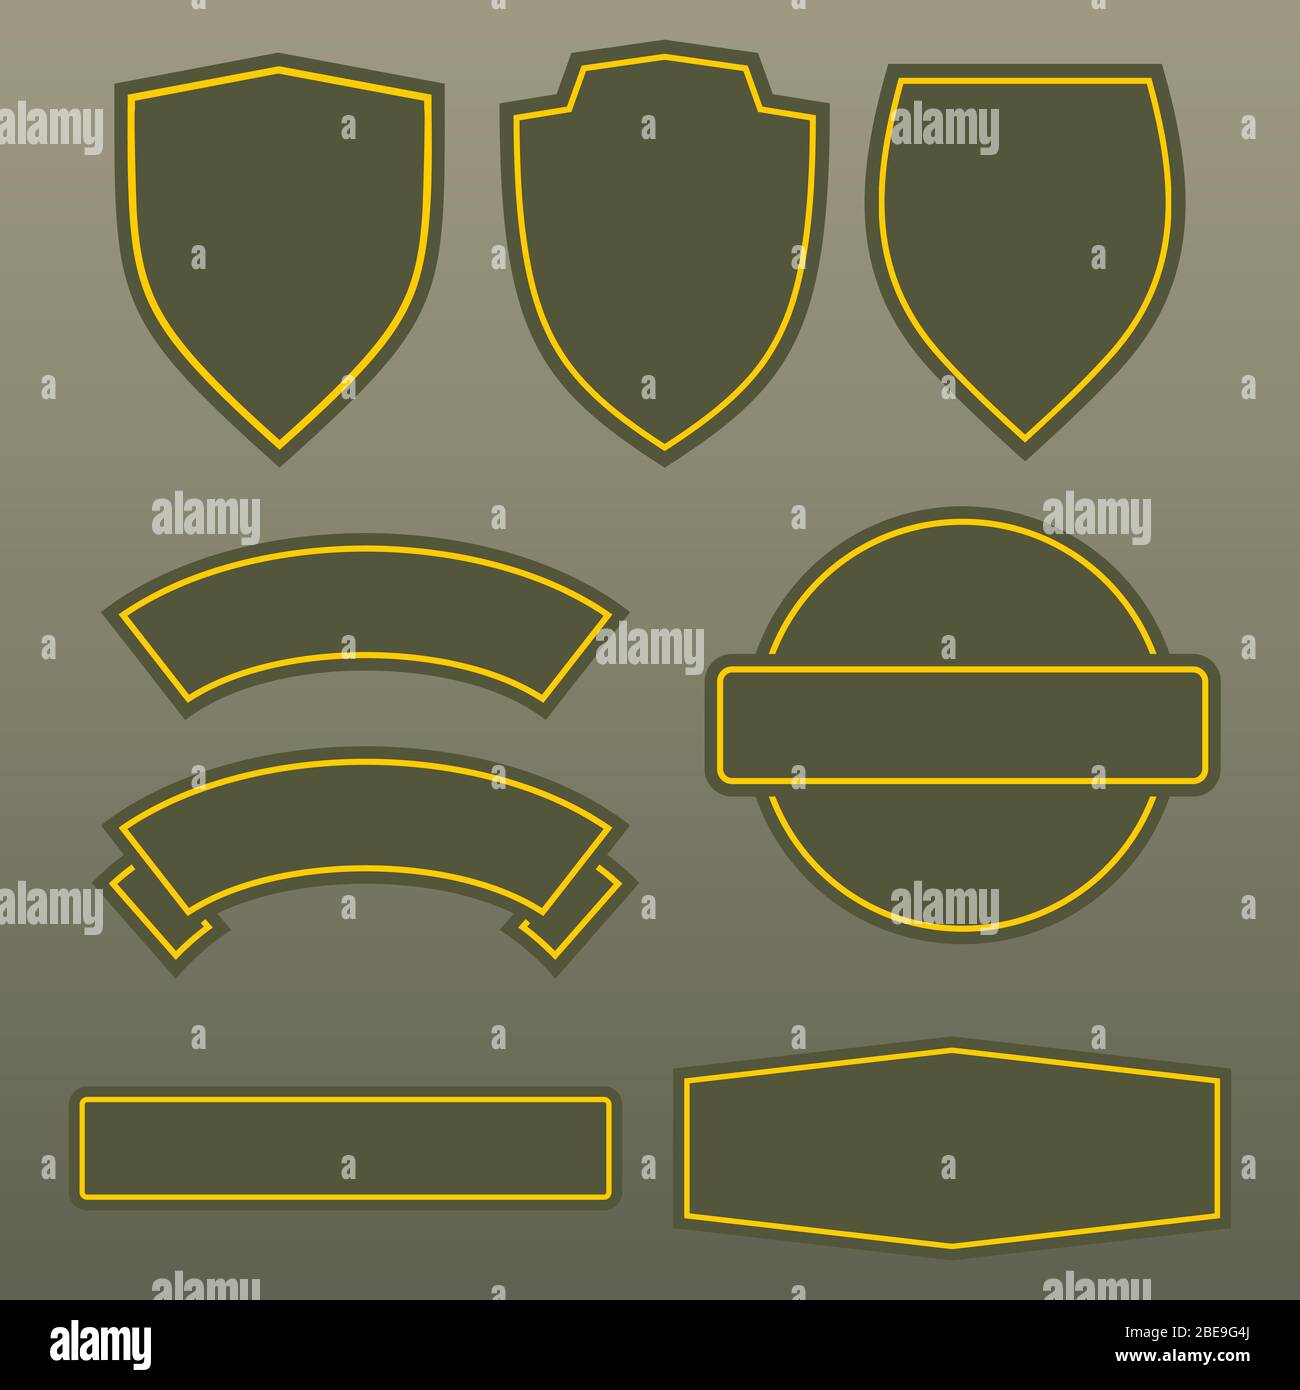 Militär Farben Armee Patches Vorlage Design. Satz von Symbol Armee Symbol, Vektor-Illustration Stock Vektor